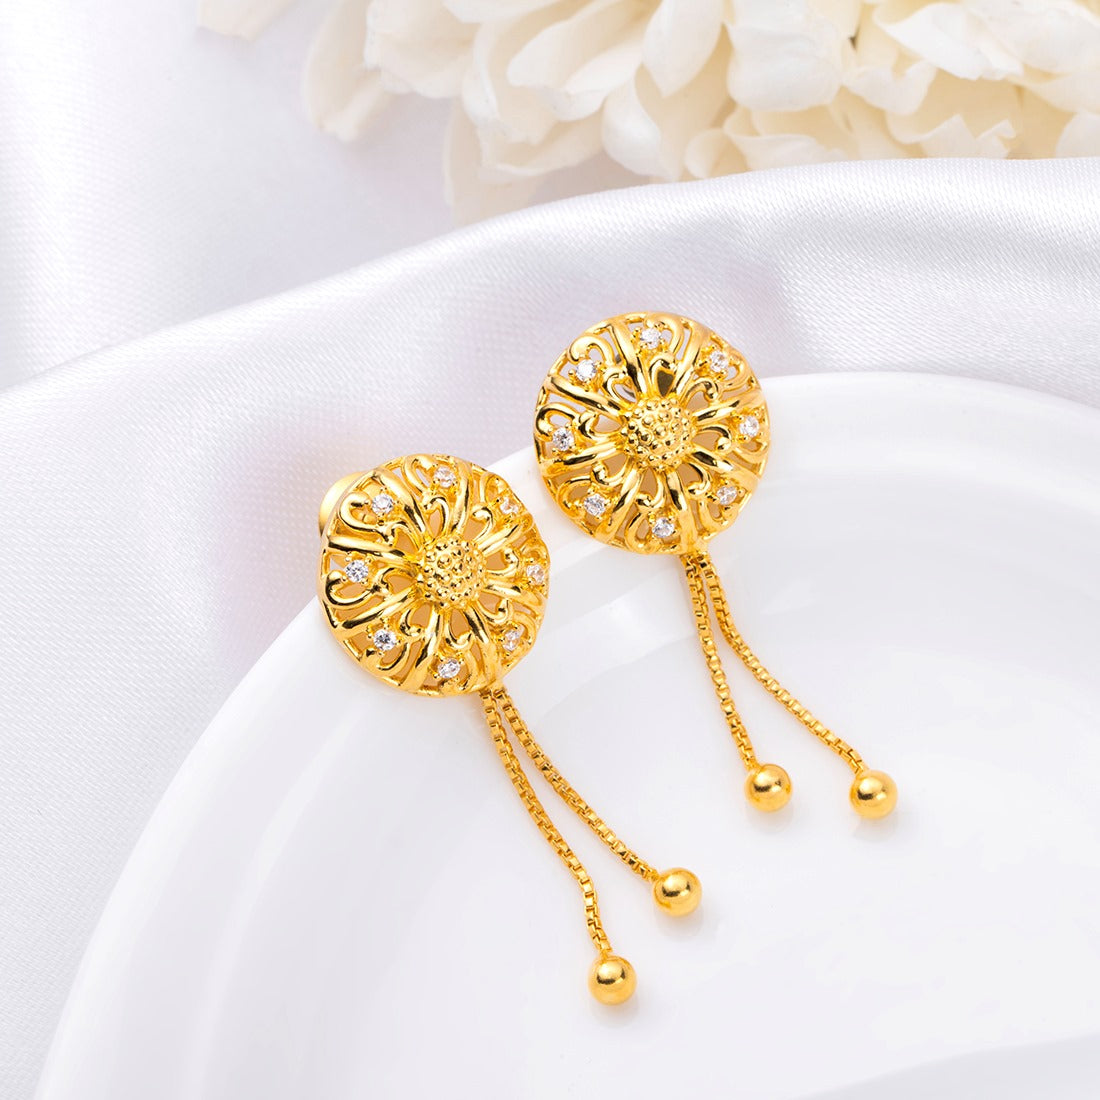 Golden Blossom Bloom 925 Sterling Silver Gold-Plated Flower Earrings